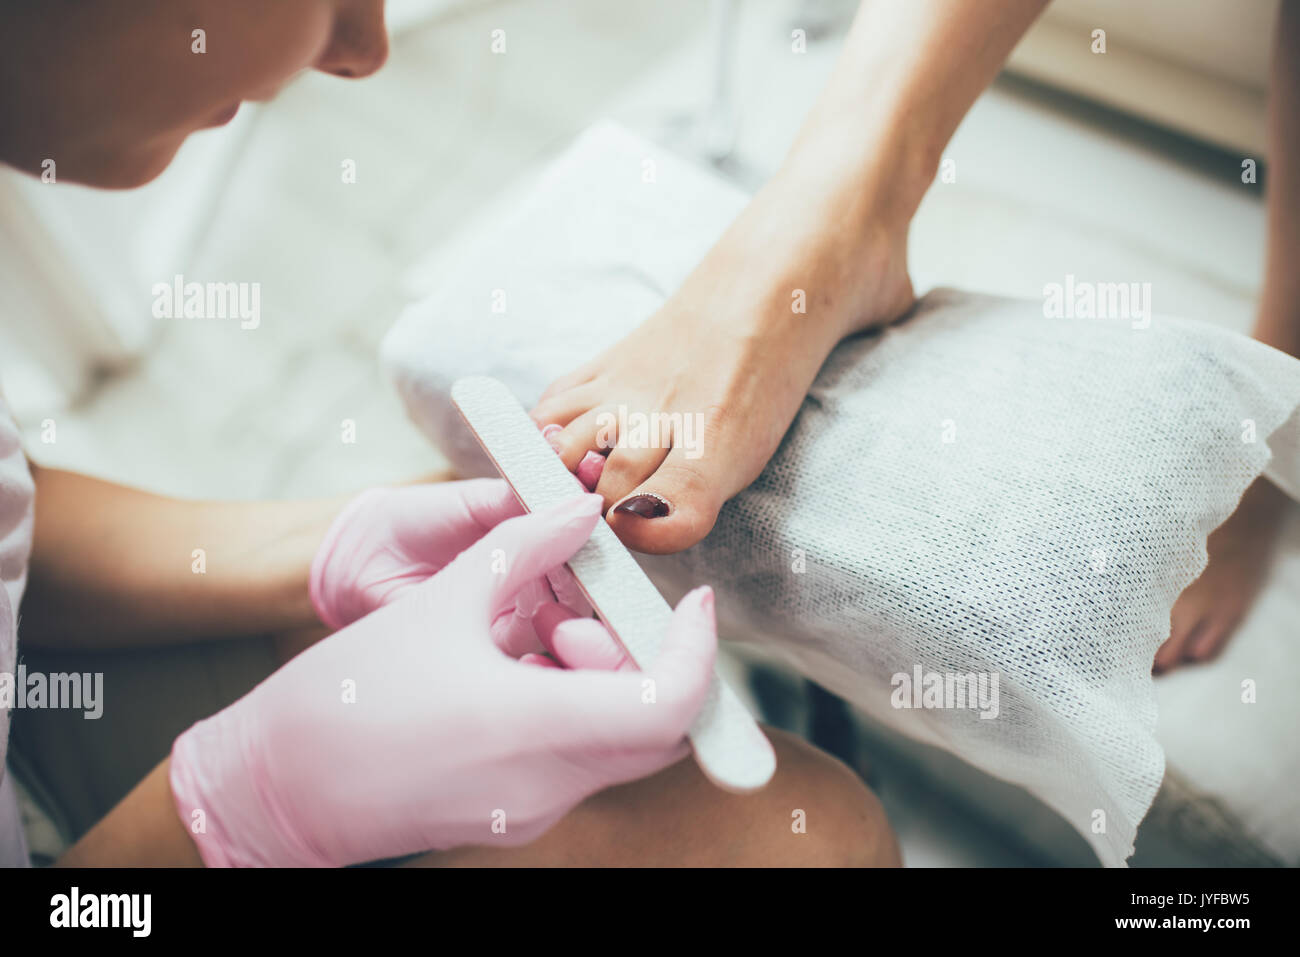 Las manos haciendo una pedicura. Los pies femeninos, salón de belleza, una imagen real Foto de stock